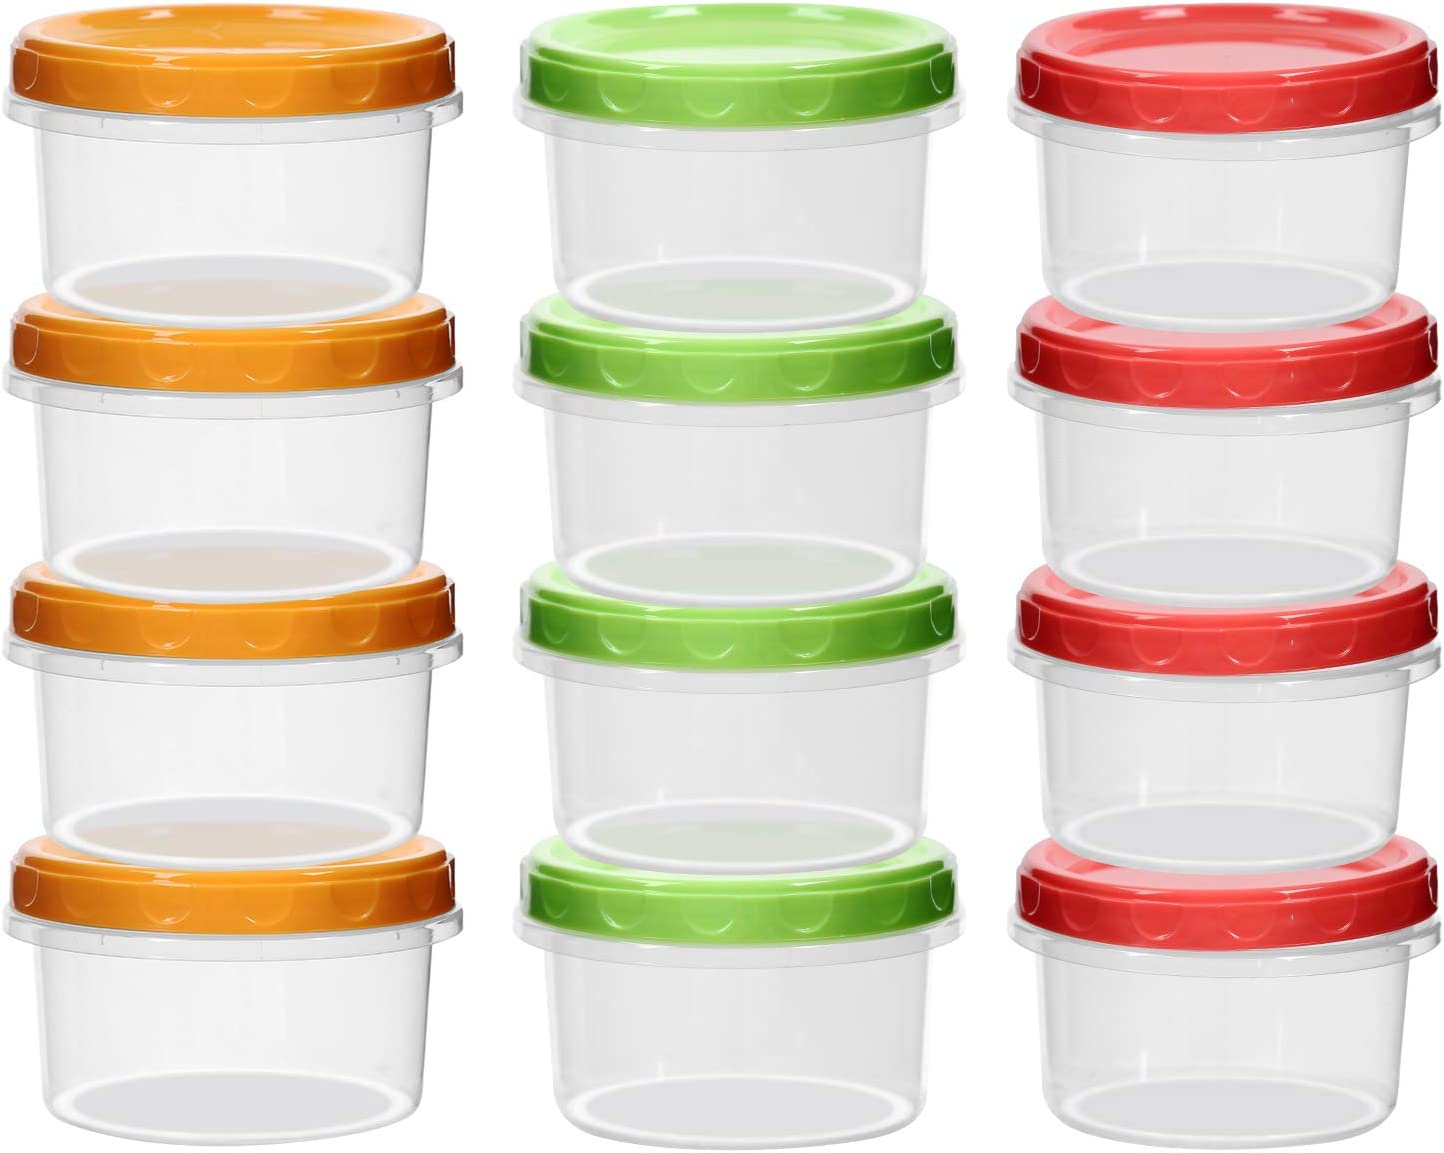 https://www.dontwasteyourmoney.com/wp-content/uploads/2022/12/eonjoe-easy-open-baby-food-freezer-containers-12-pack-baby-food-freezer-container.jpg